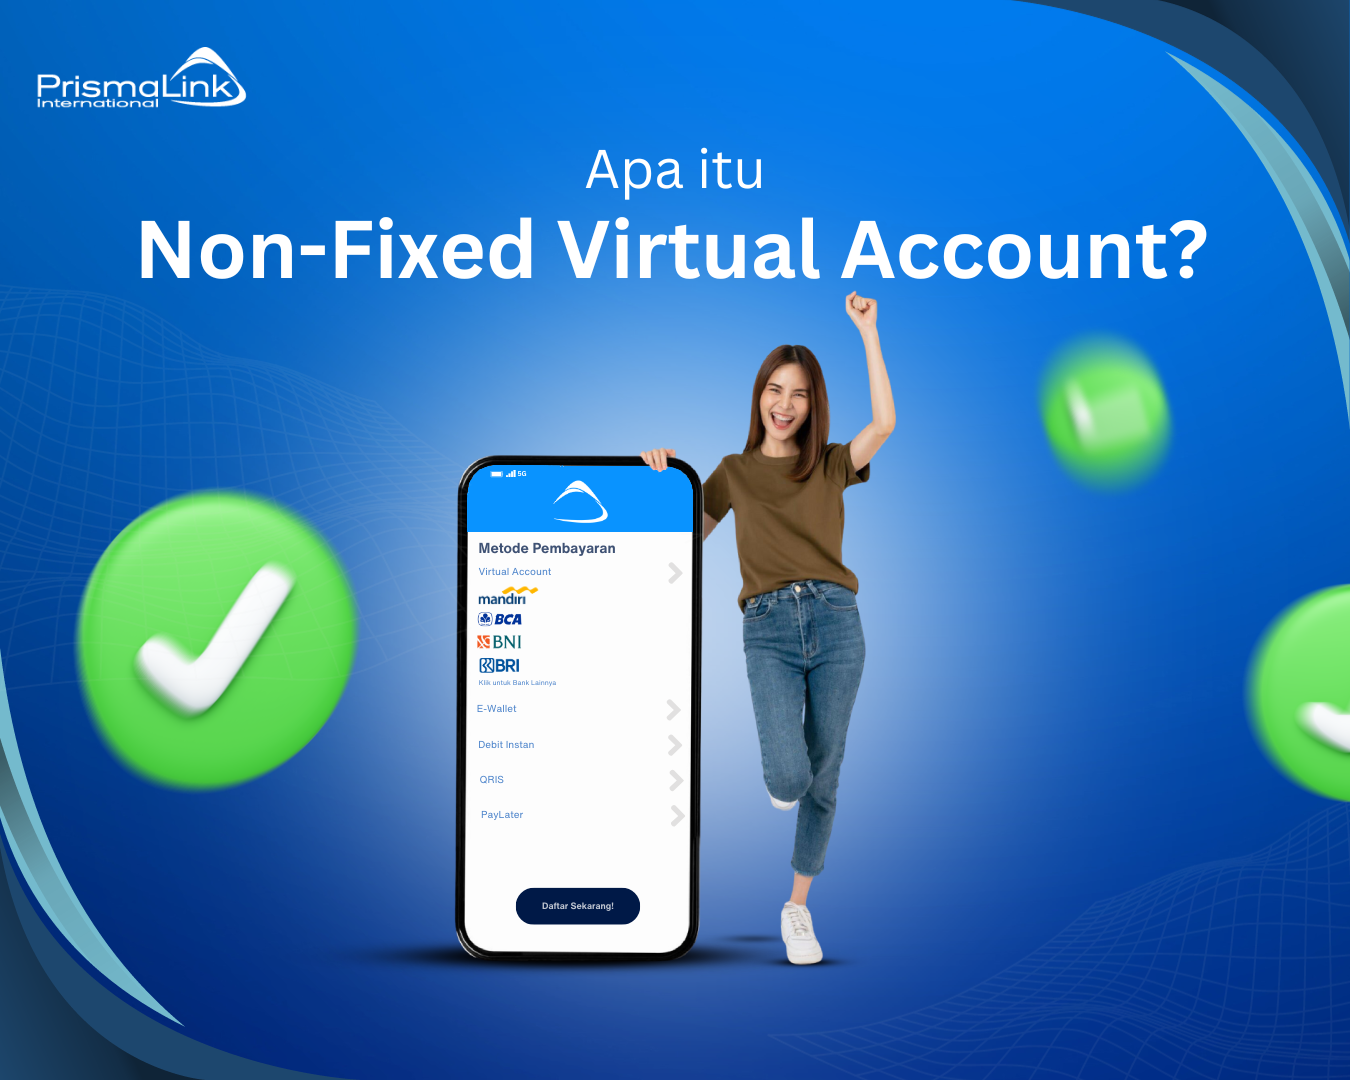 Non-Fixed Virtual Account